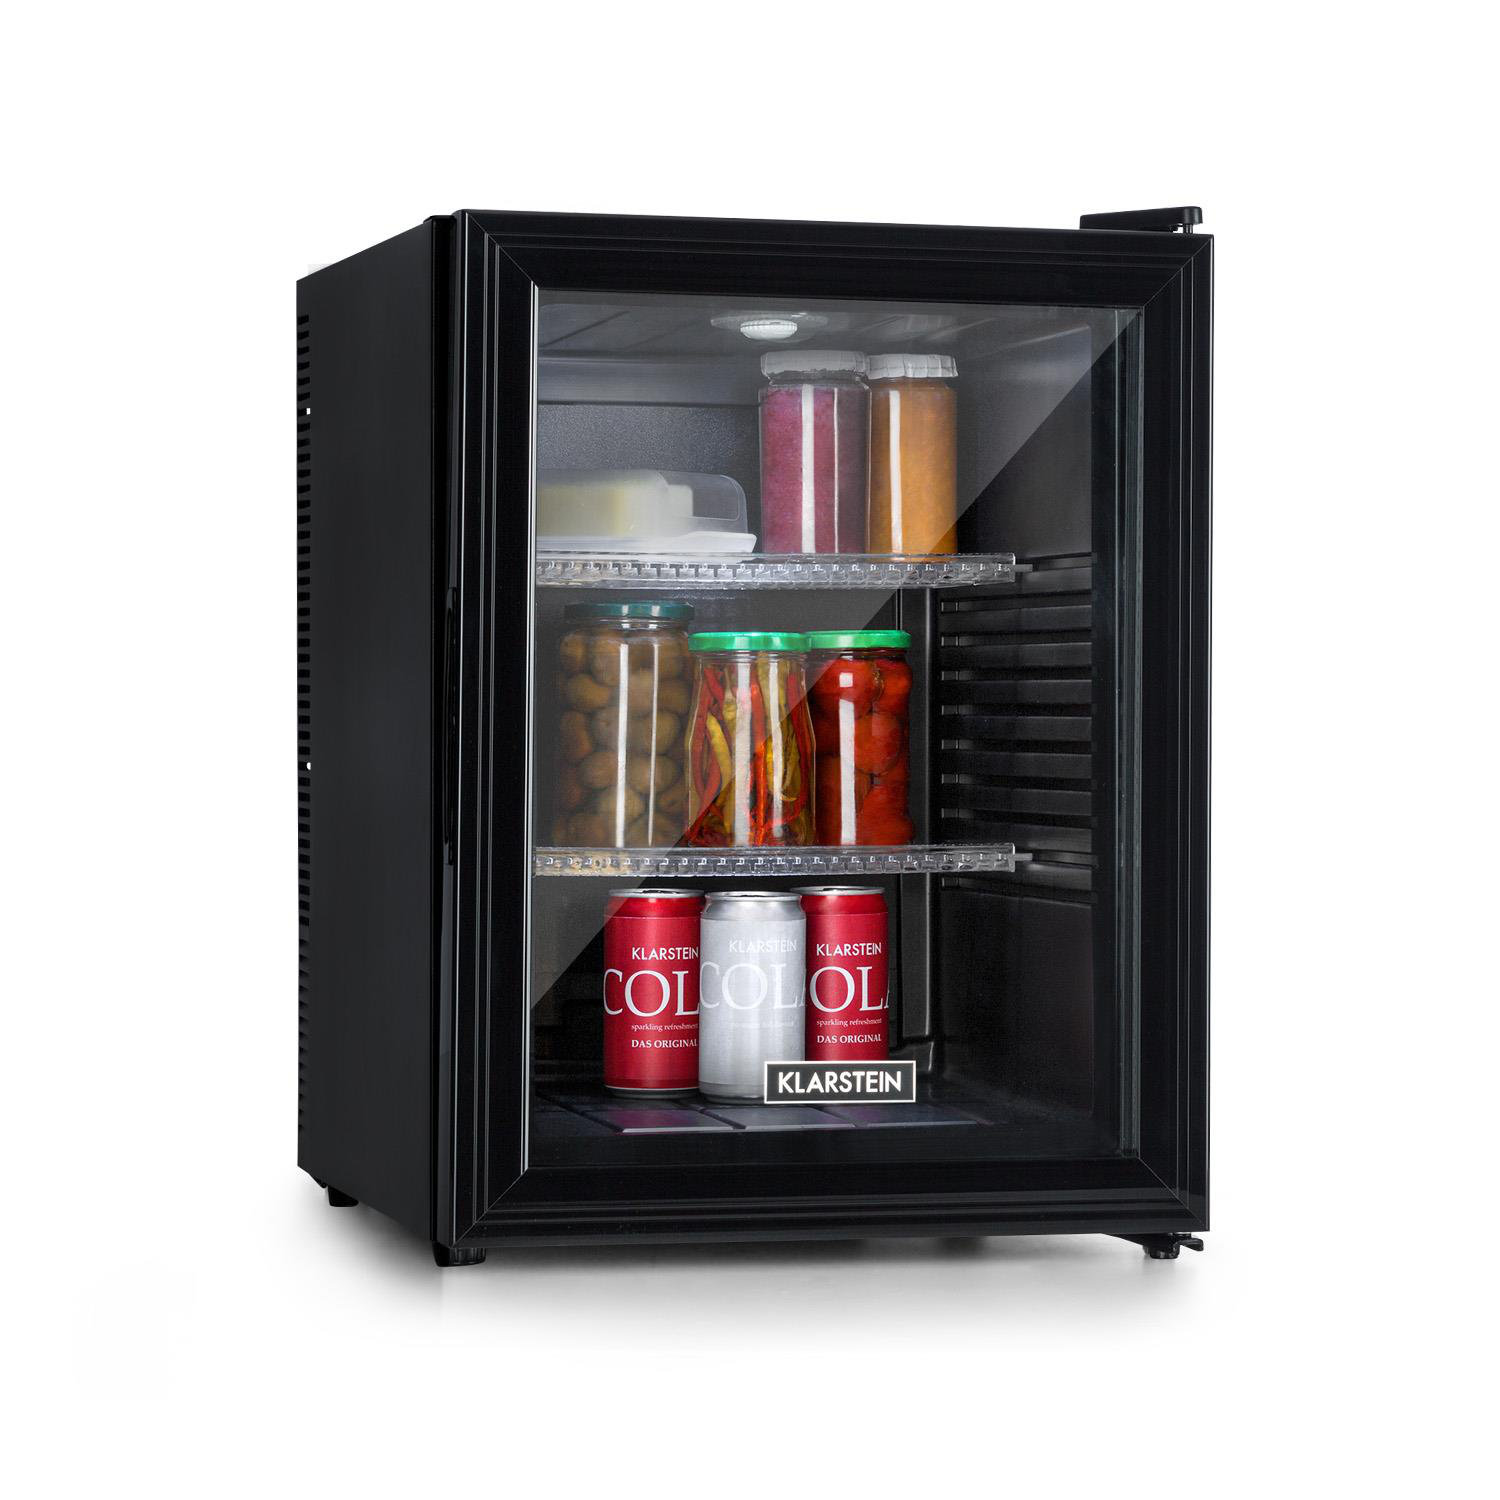 20L Küche Mini Kühlschränke Kühlschrank Mit Gefrierfach Kleine